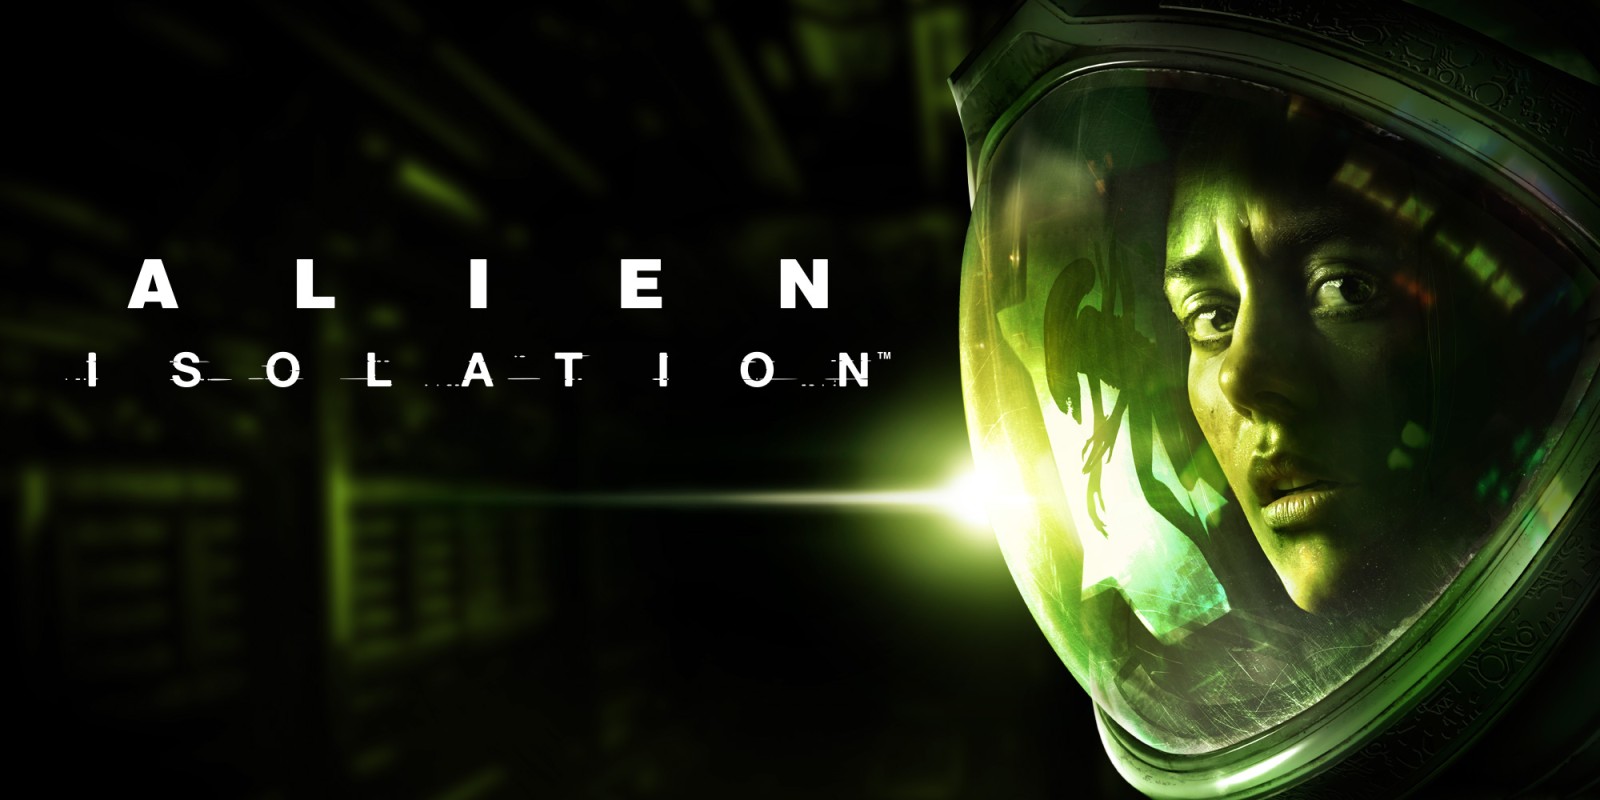 اگر دنبال یک بازی ترسناک موبایل هستید به سراغ Alien: Isolation به عنوان یکی از بهترین بازی های گرافیکی اندروید و iOS بروید